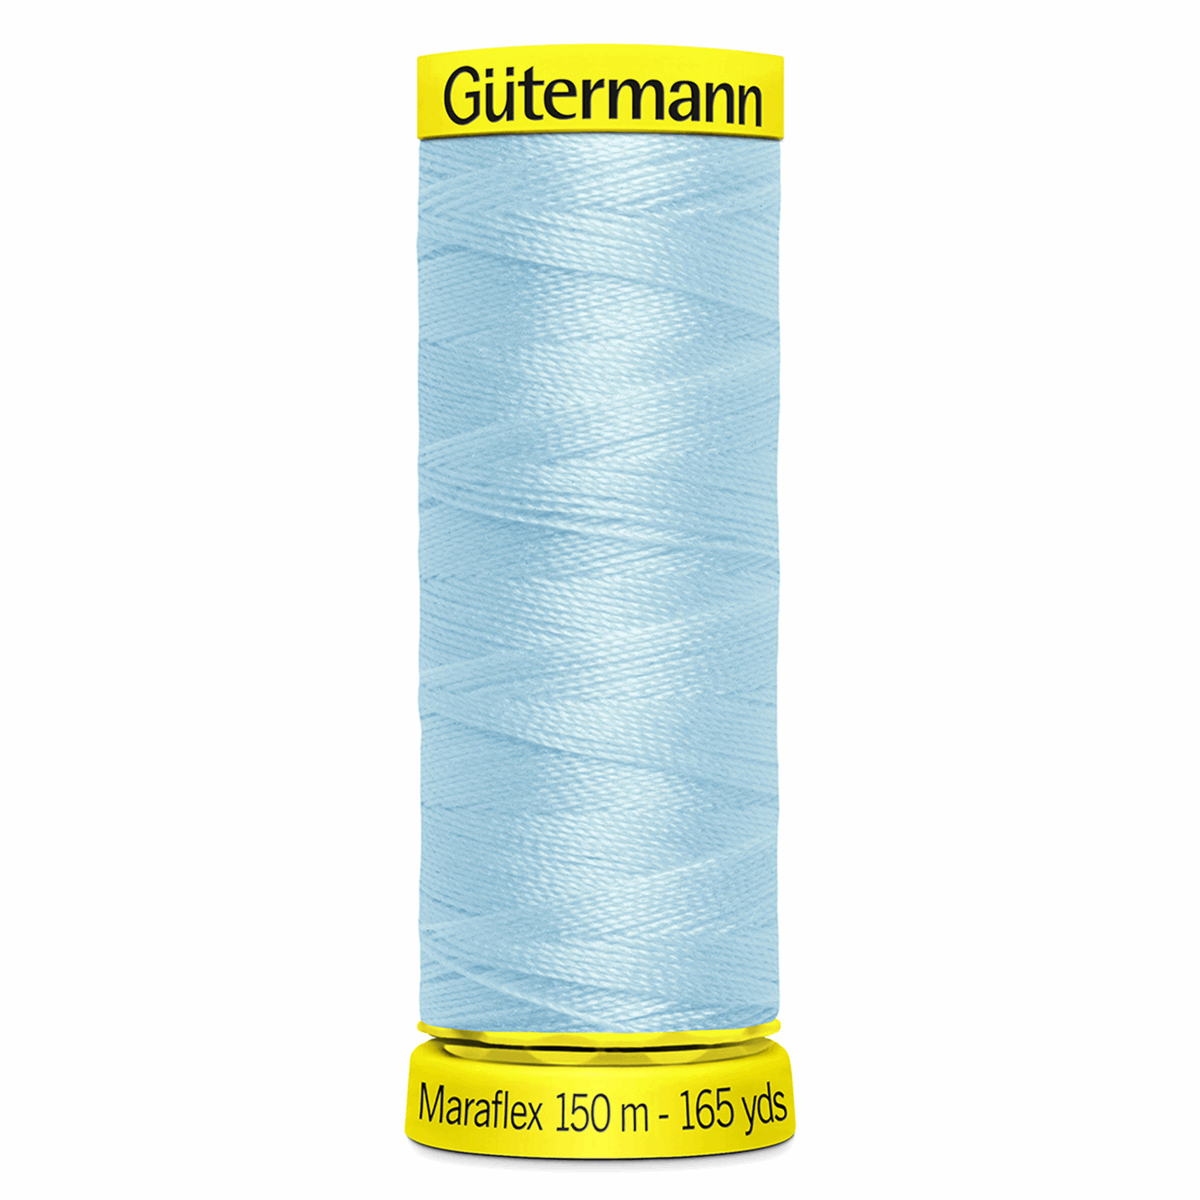 Gutermann Maraflex Elastic Sewing Thread 150m Blue 195